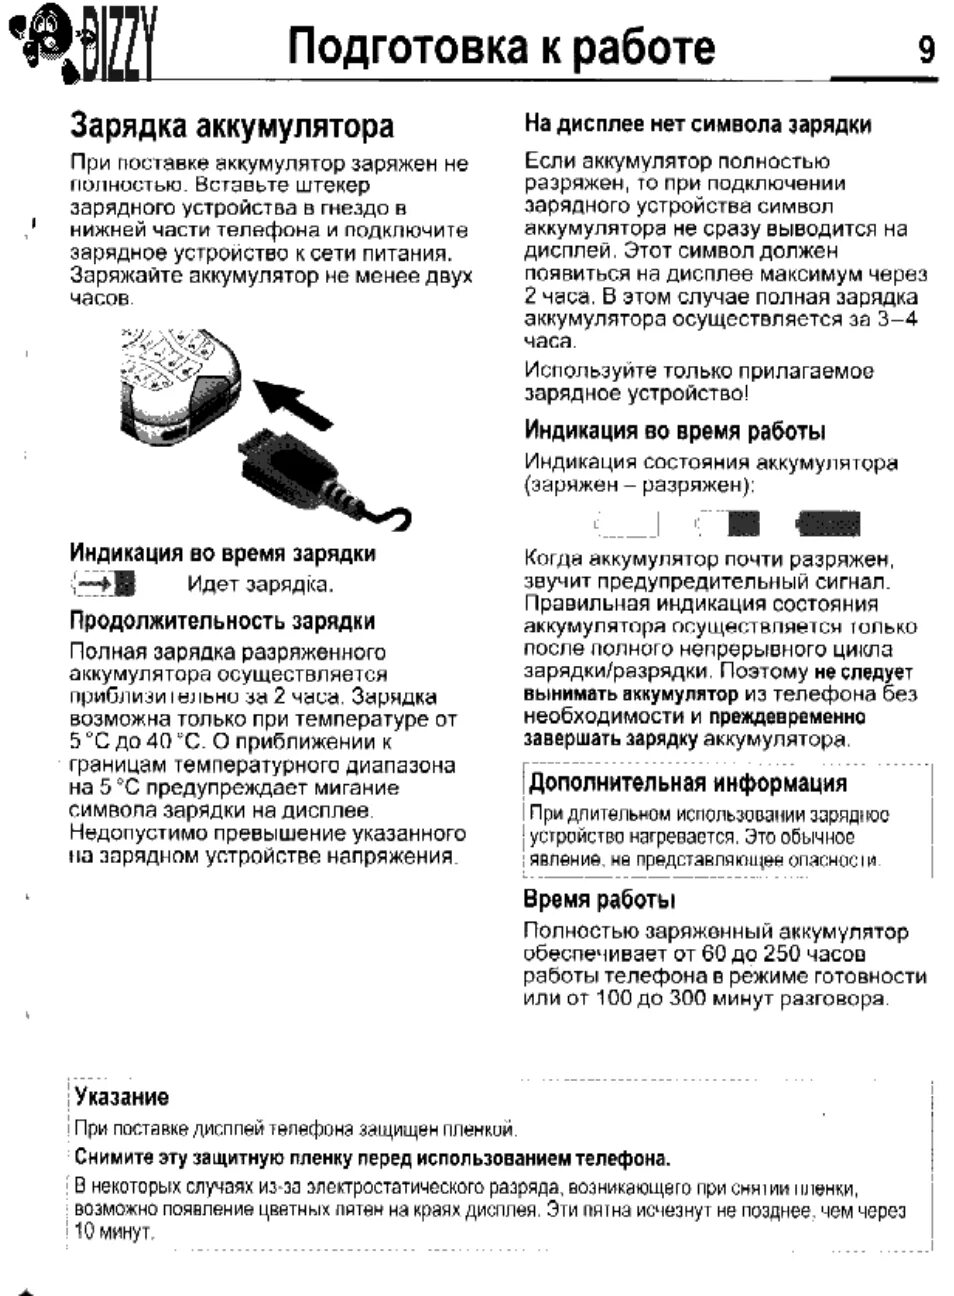 Инструкция зарядки телефона. Зарядка для телефона Siemens m55. Dicom зарядное устройство инструкция по эксплуатации на русском языке. Инструкция а55. Siemens m55 аккумулятор разряжен зарядите.